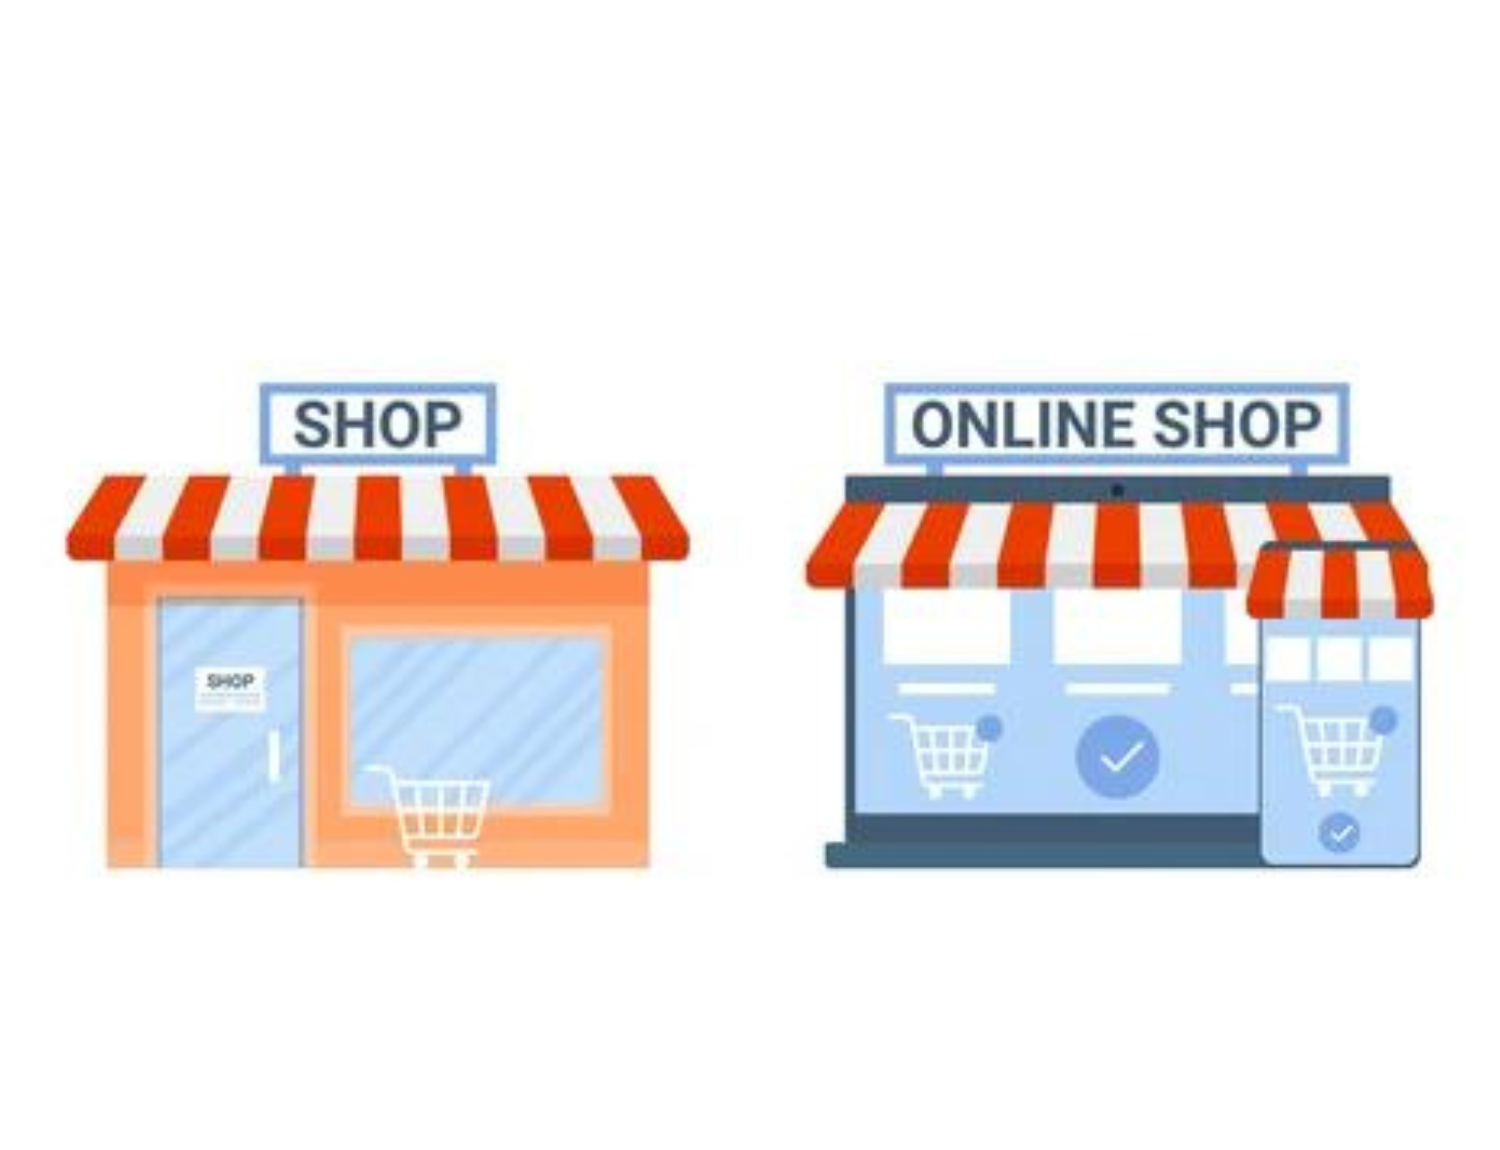 Offline store vs online shop benefits